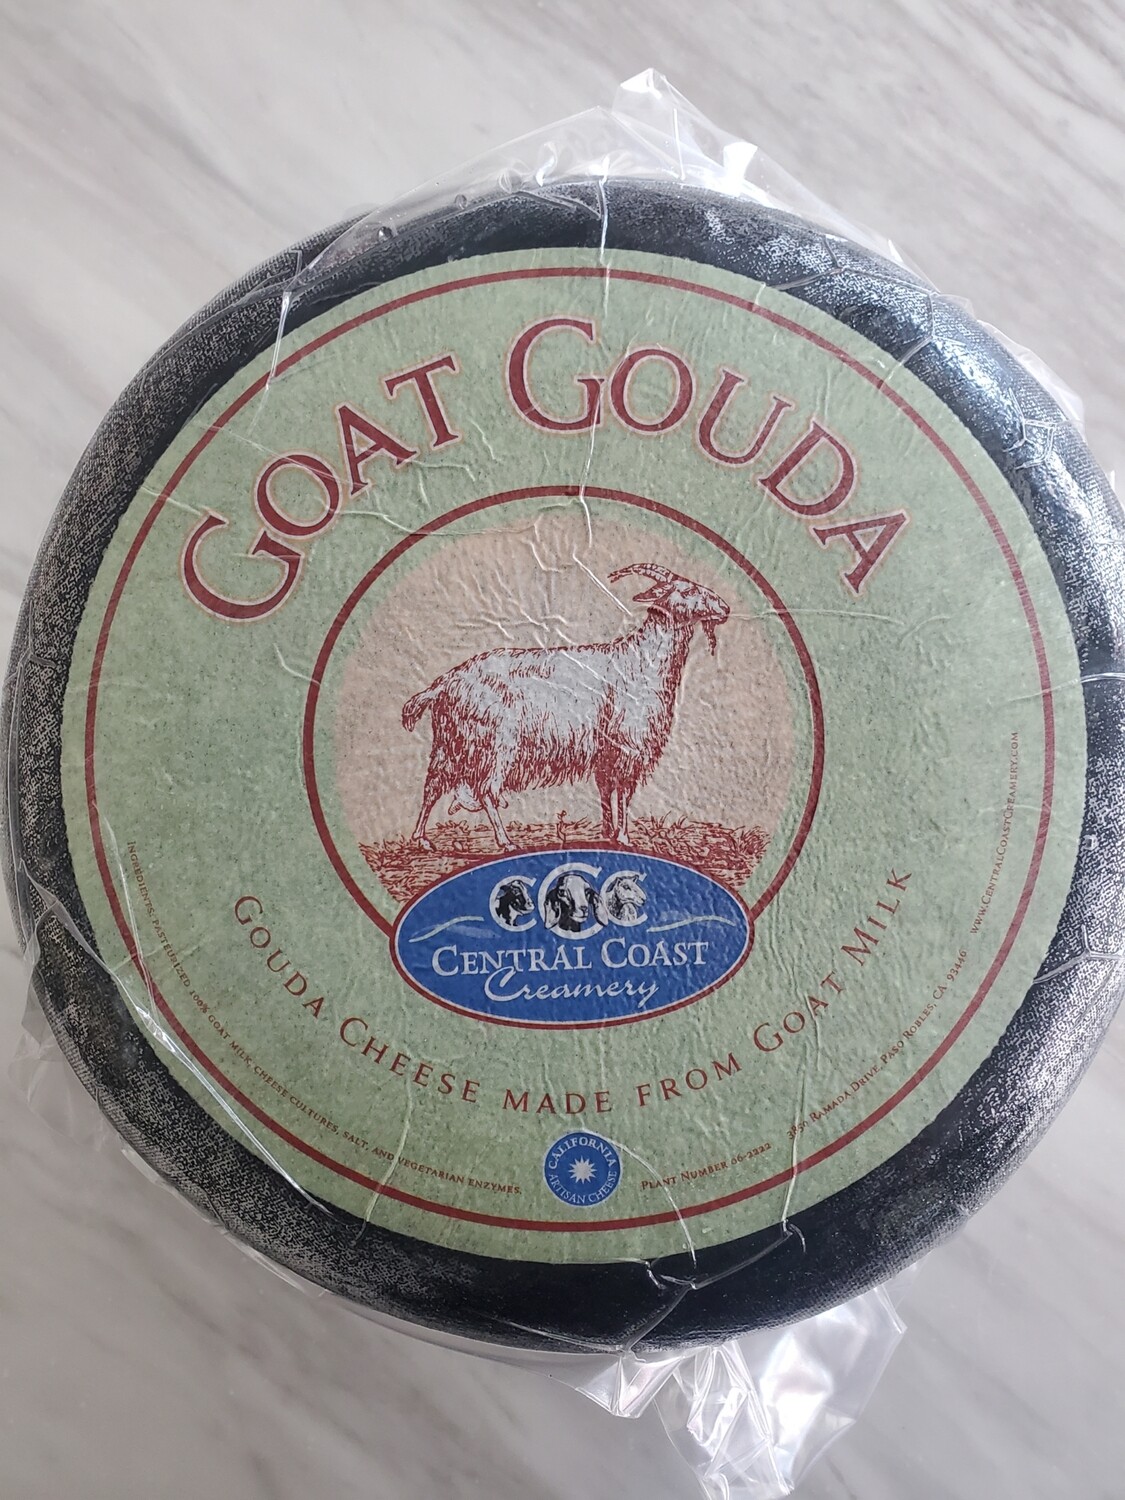 Goat Gouda by Central Coast Creamy